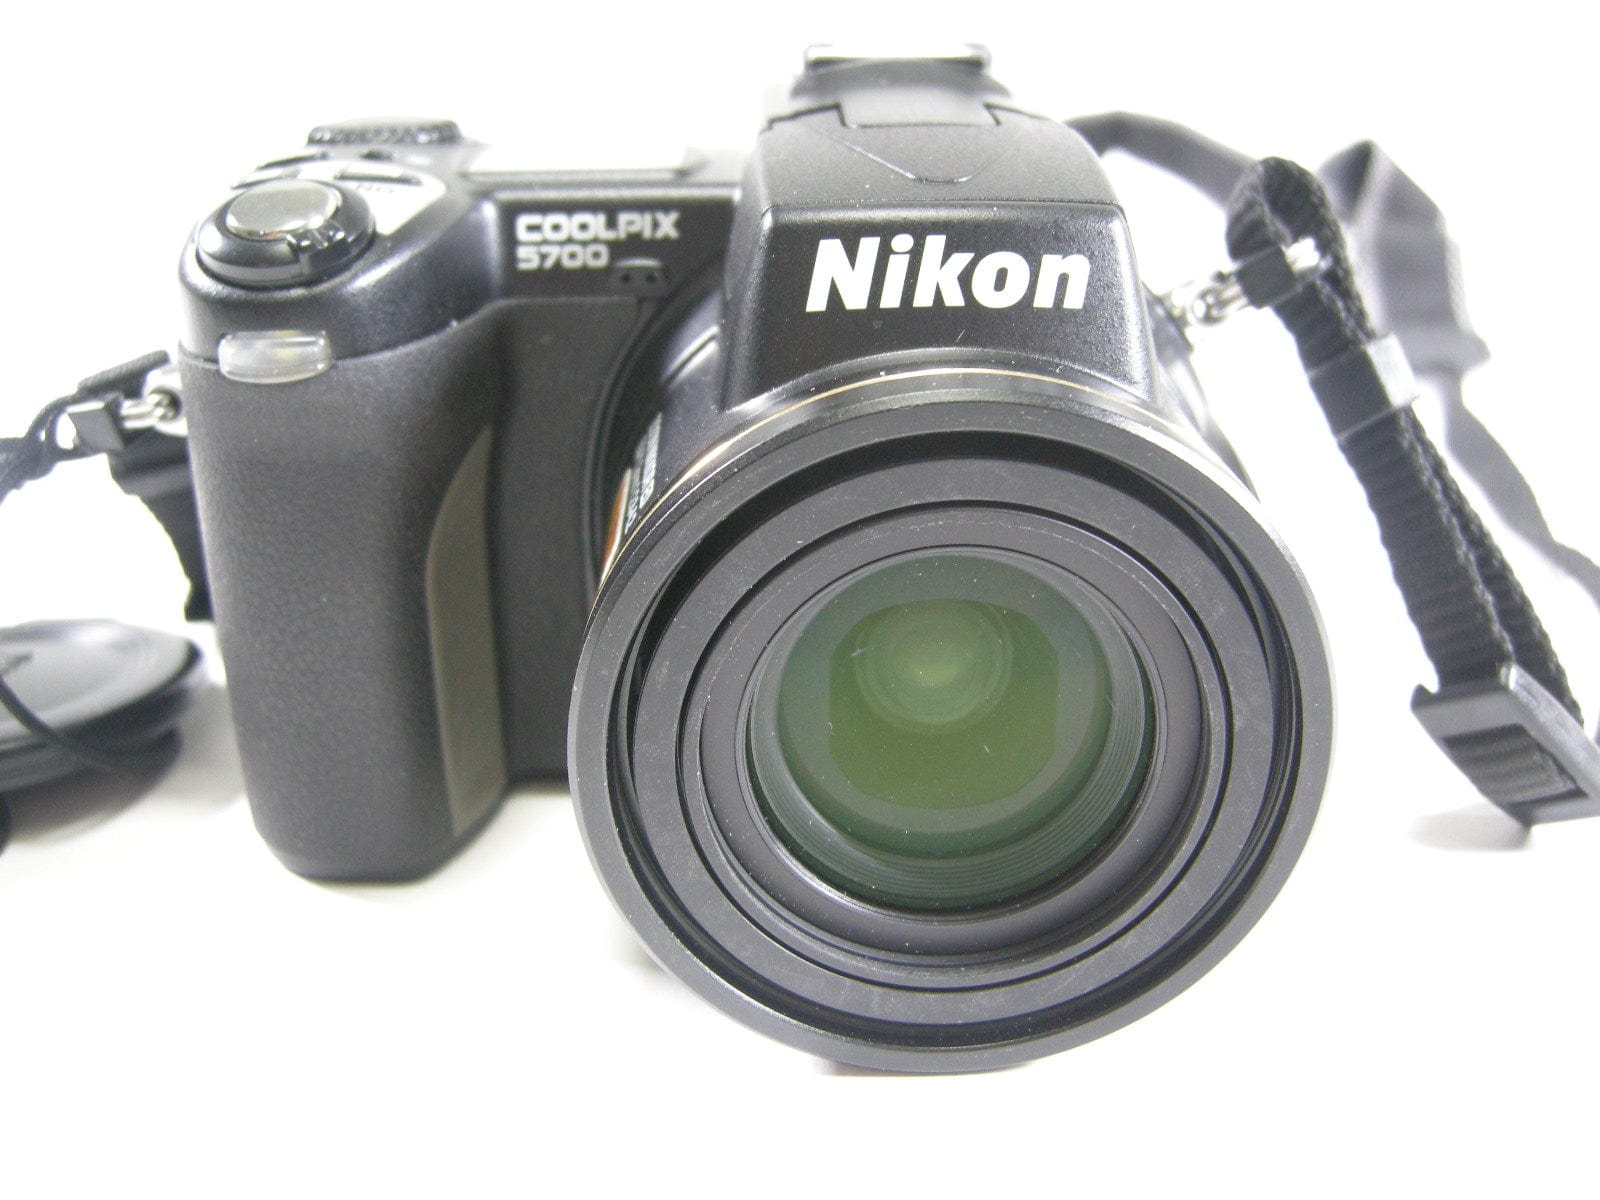 Nikon Coolpix 5700 5.0mp Digital camera